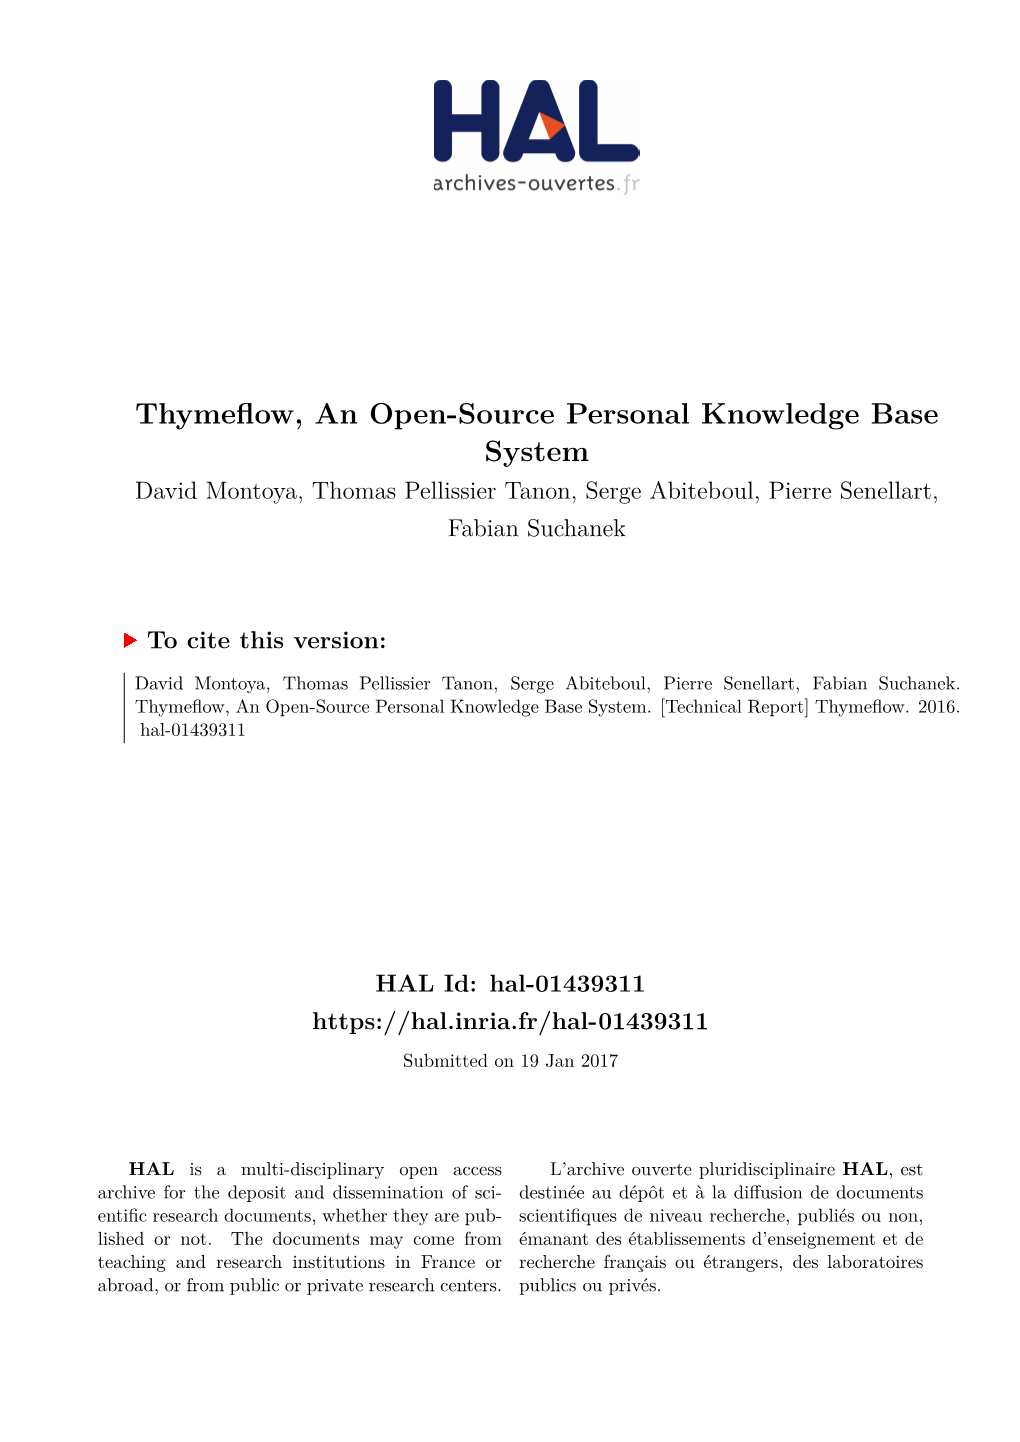 Thymeflow, an Open-Source Personal Knowledge Base System David Montoya, Thomas Pellissier Tanon, Serge Abiteboul, Pierre Senellart, Fabian Suchanek